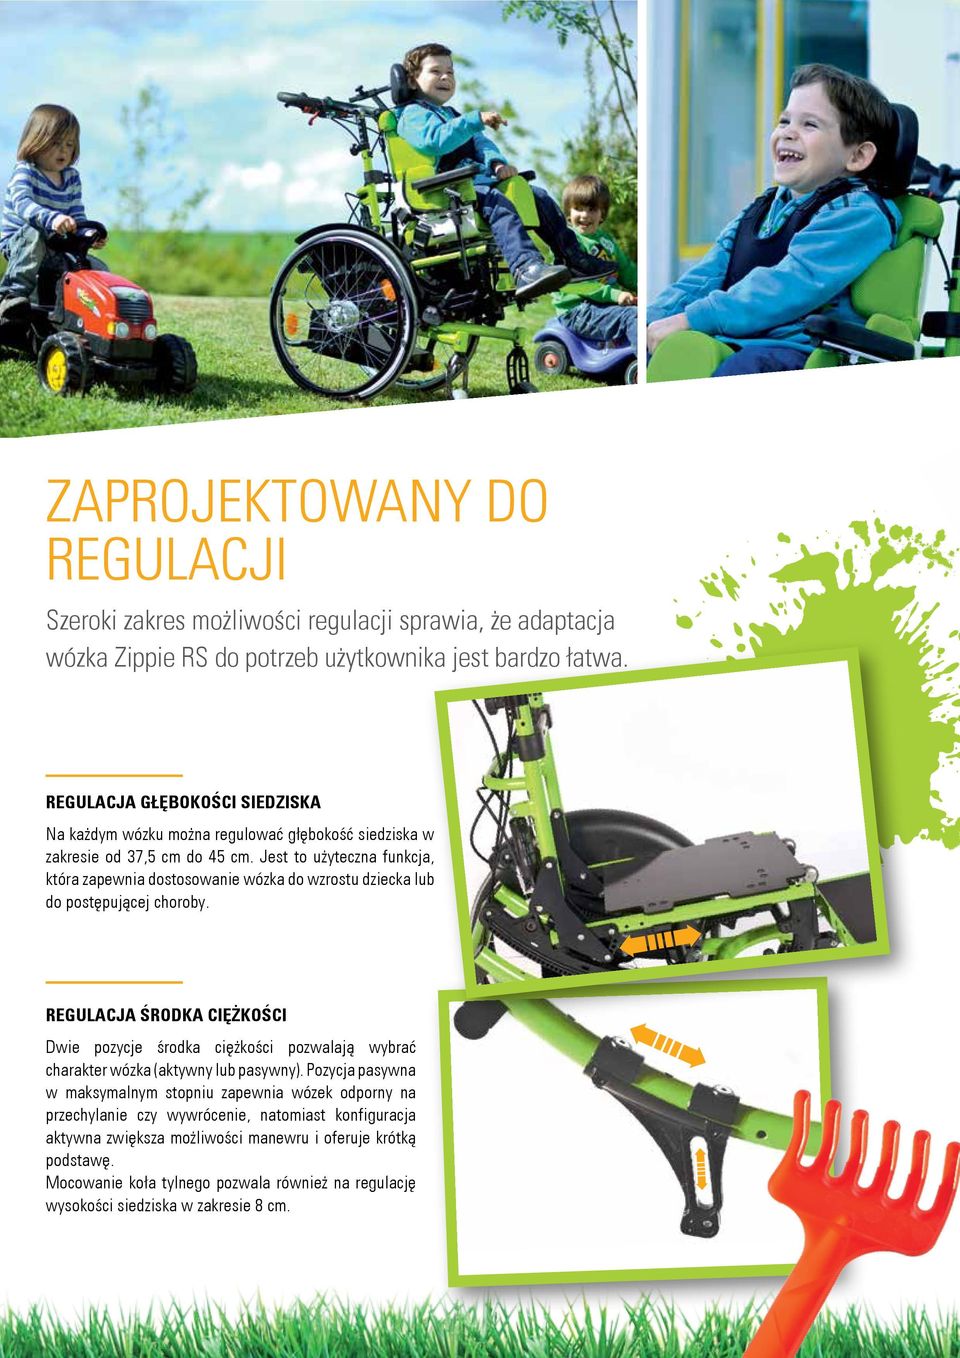 Jest to użyteczna funkcja, która zapewnia dostosowanie wózka do wzrostu dziecka lub do postępującej choroby.